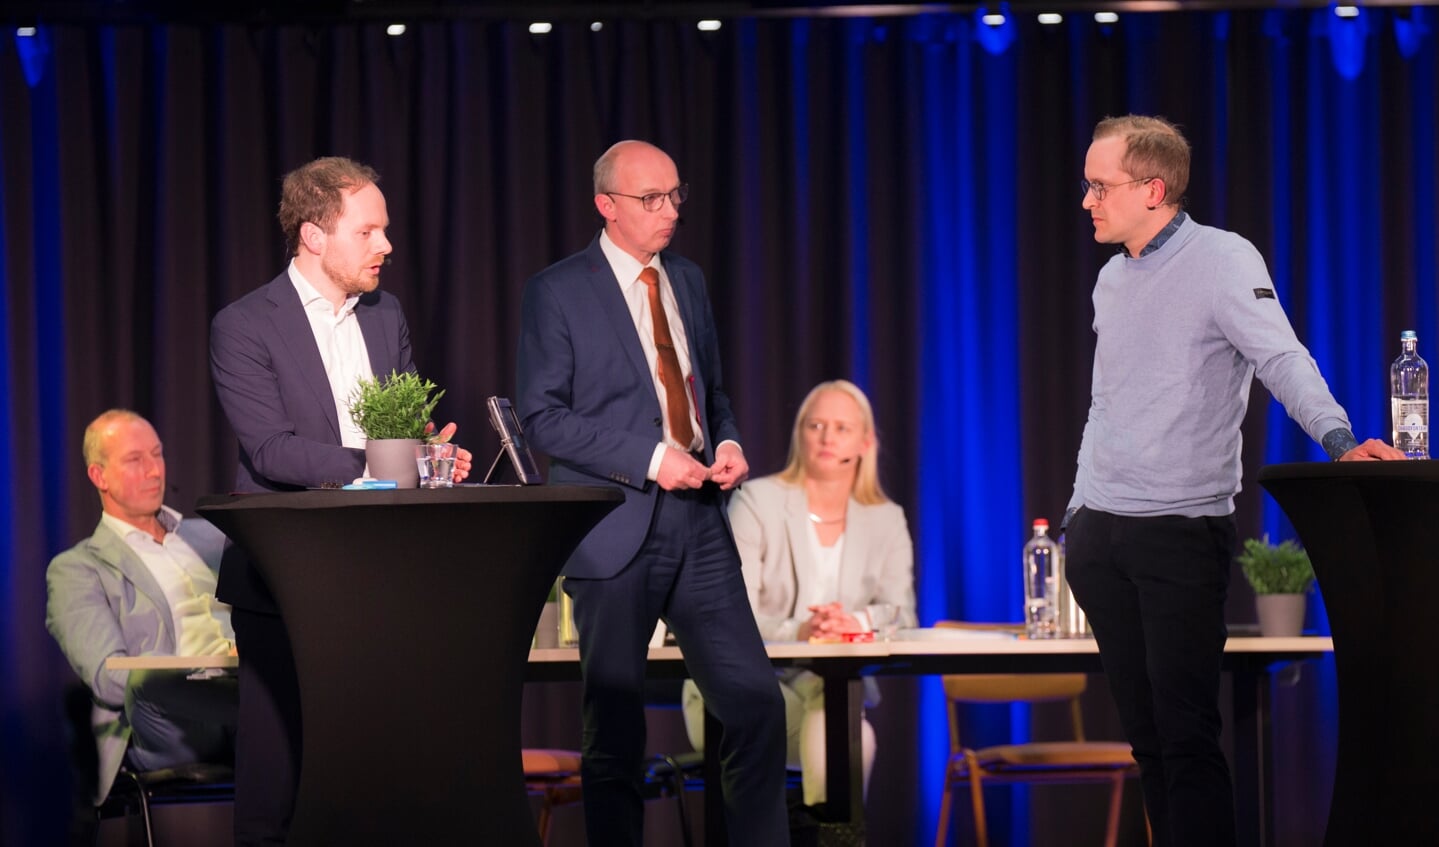 Debat over de zondagsrust, met Daan de Vries (CDA), Leendert de Knegt (SGP) en Arjen Korevaar (Pro'98).